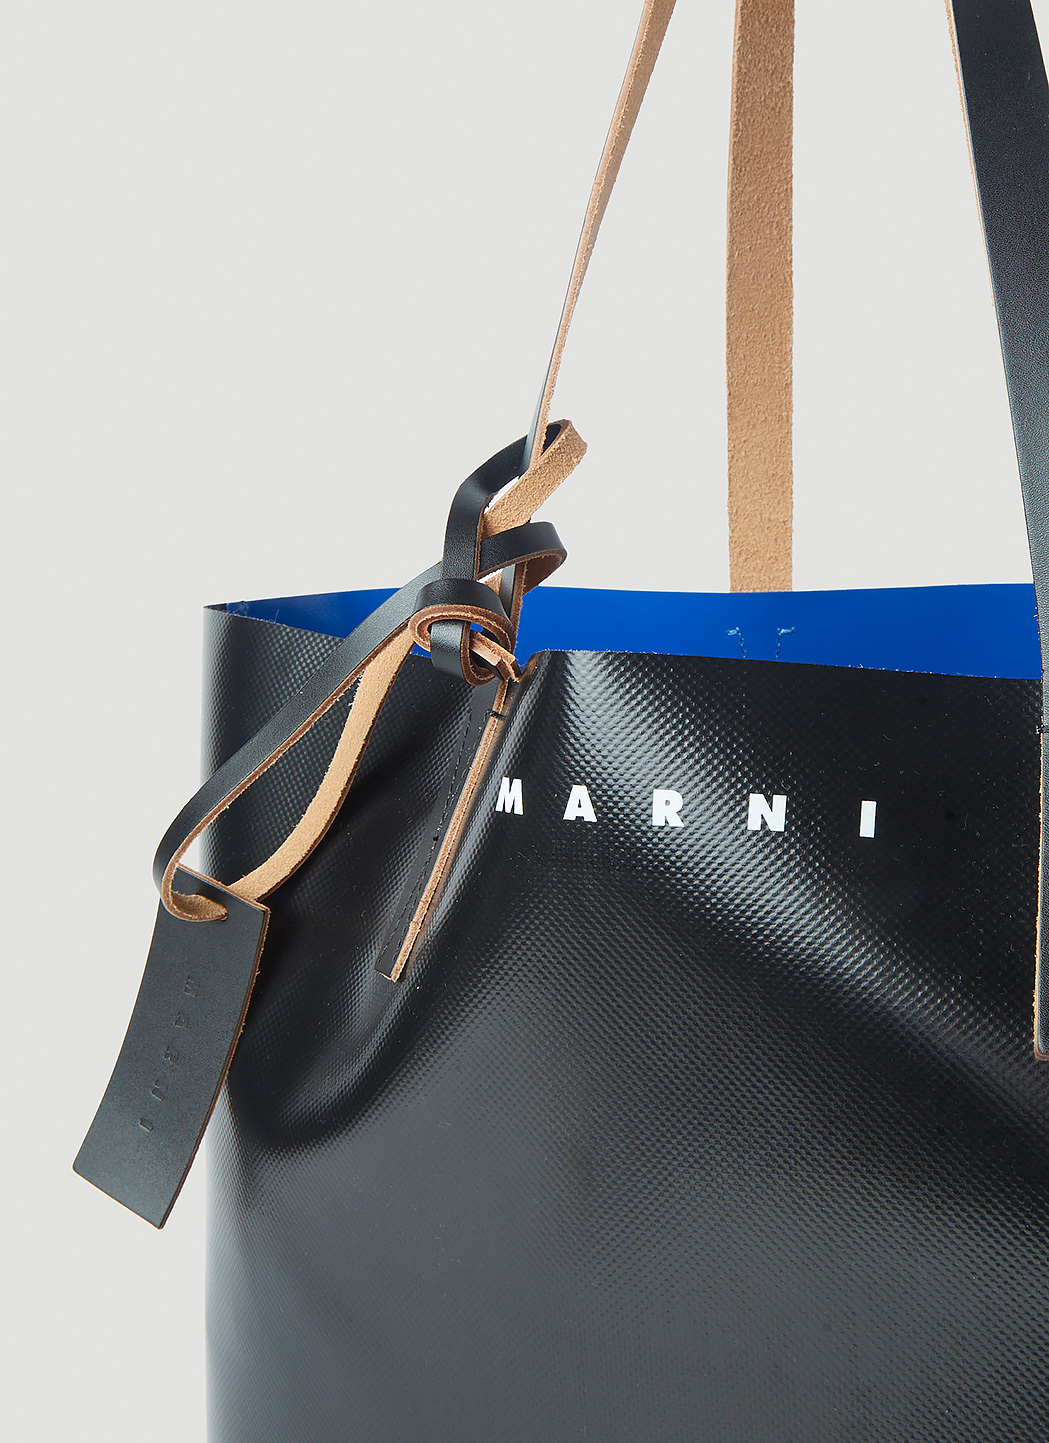 Marni Men's Tribeca Tote Bag in Black | LN-CC